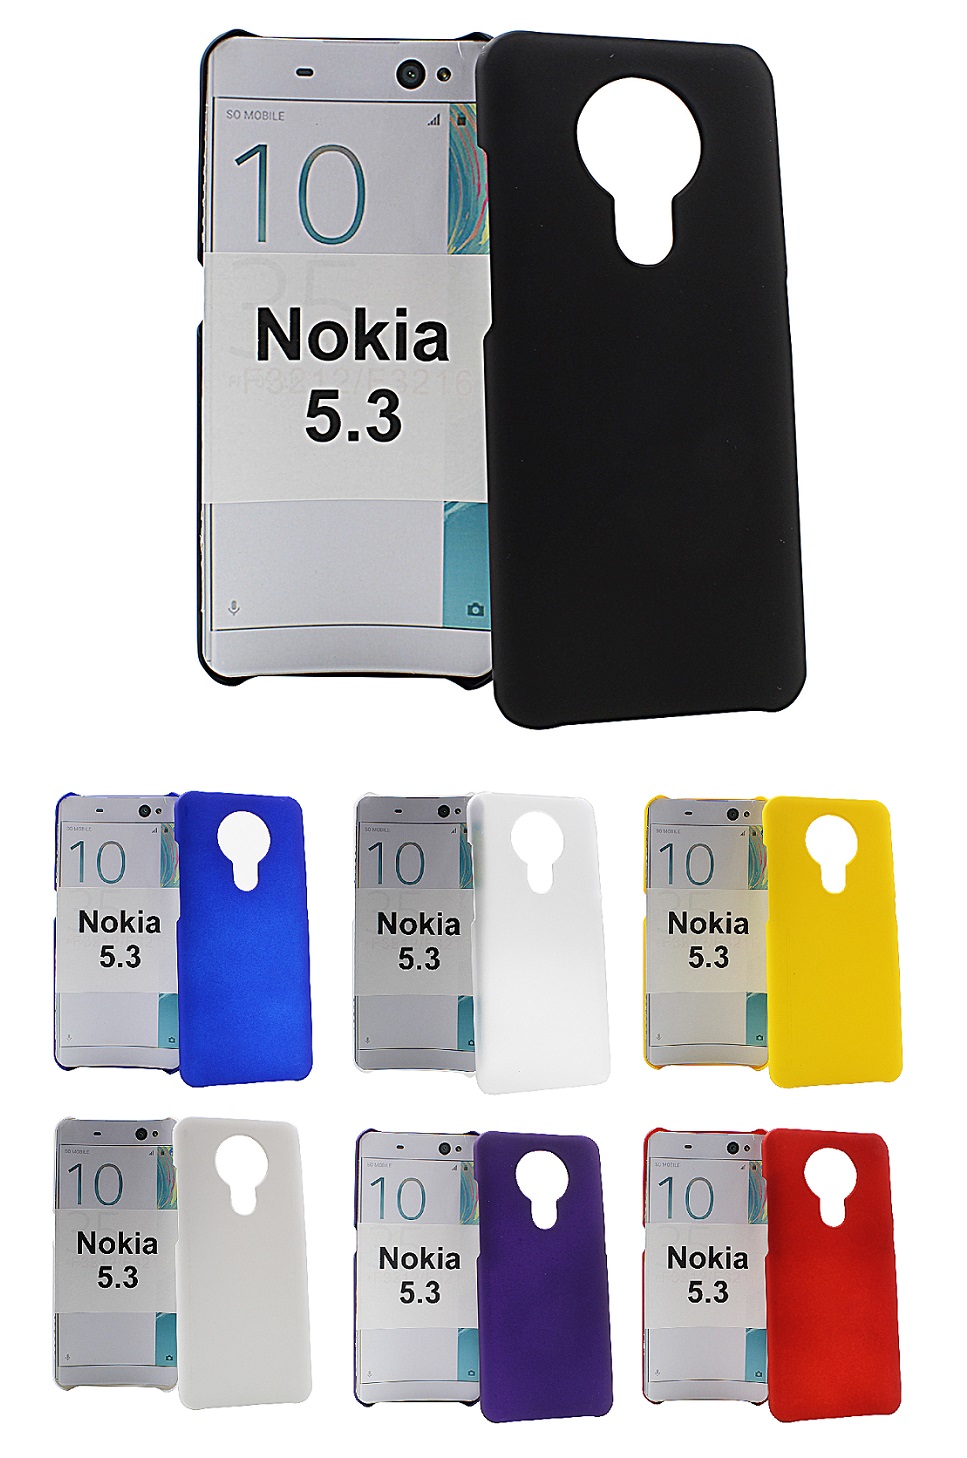 Hardcase Deksel Nokia 5.3